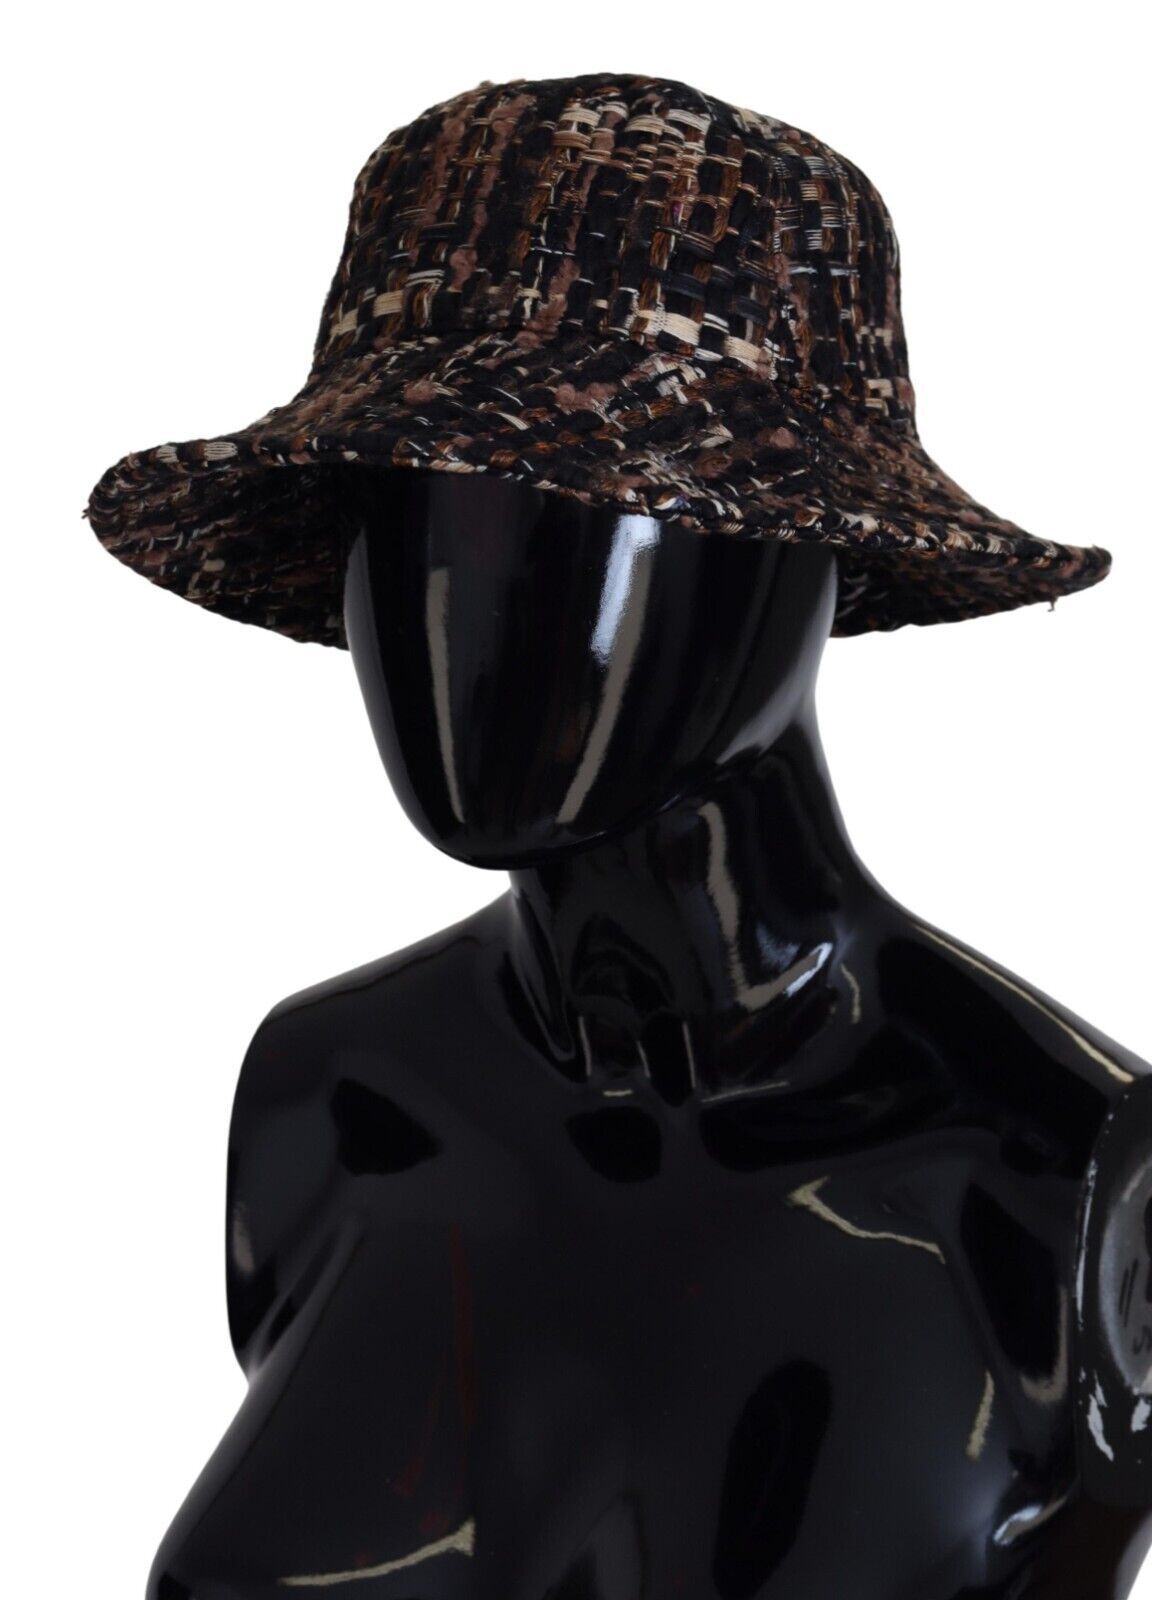 Brown Tweed Plaid Fedora Trilby Hat